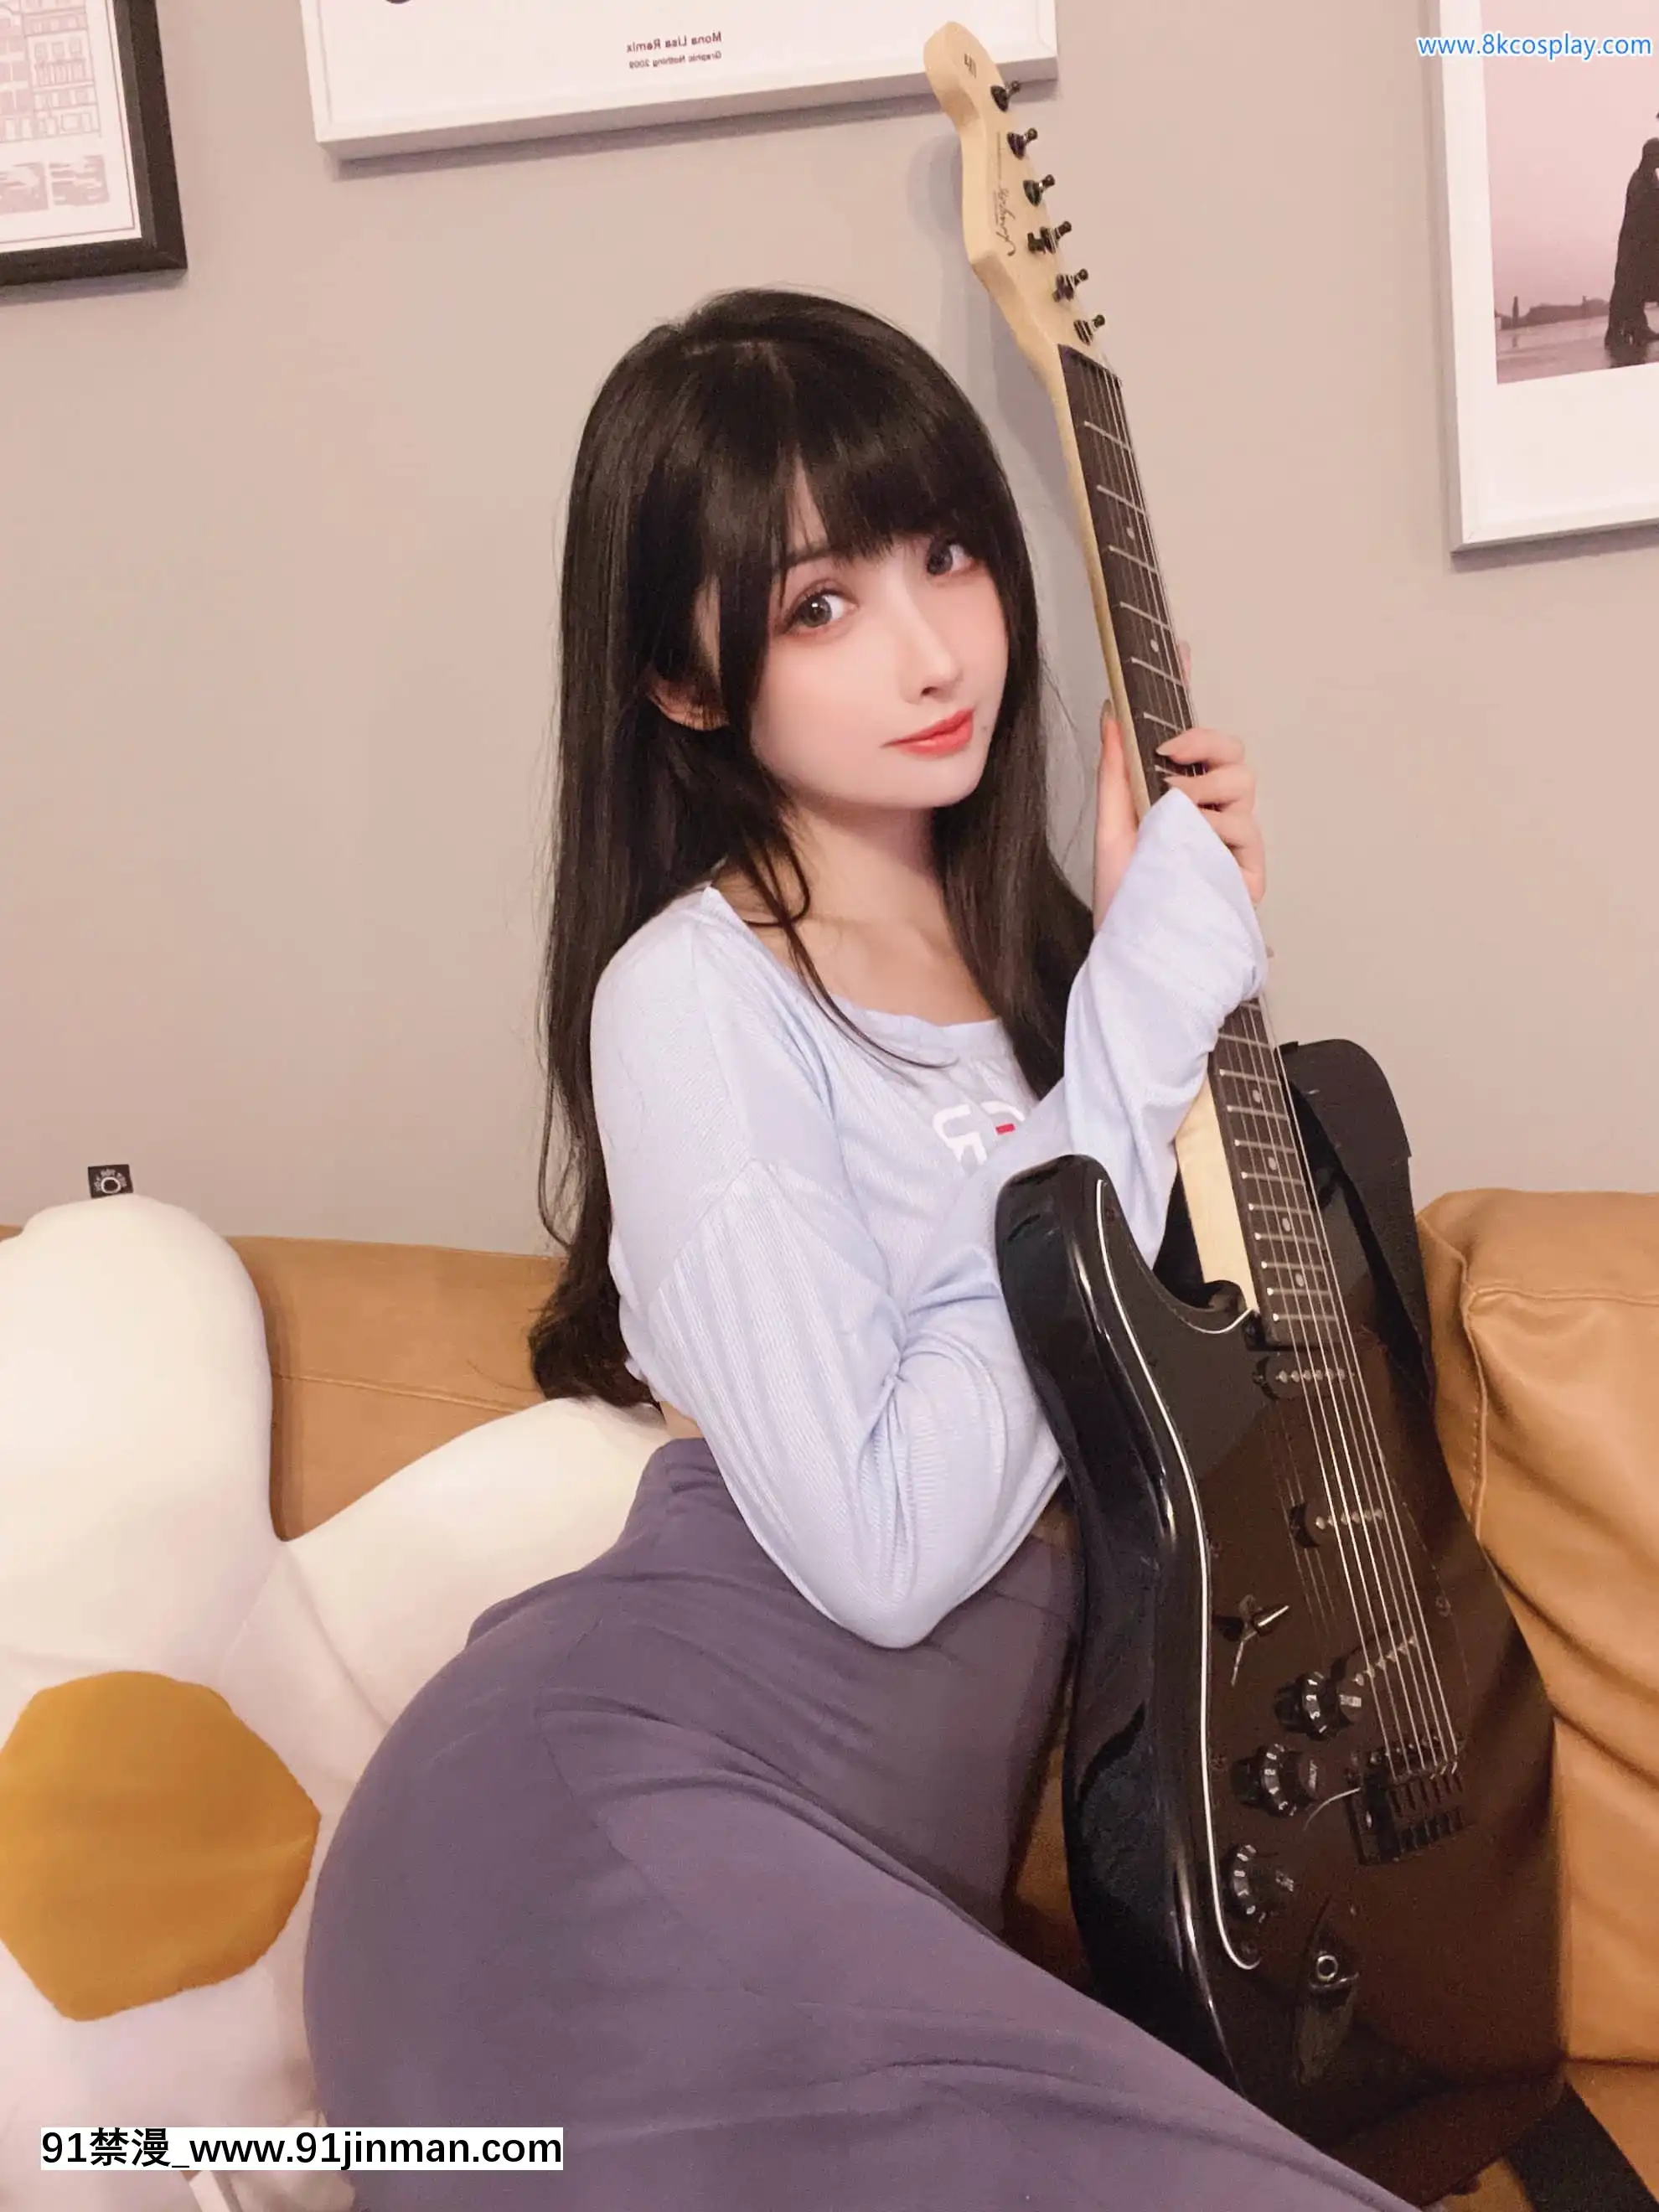 Rioko mát mẻ guitar em gái【vanellope von schweetz hentai】